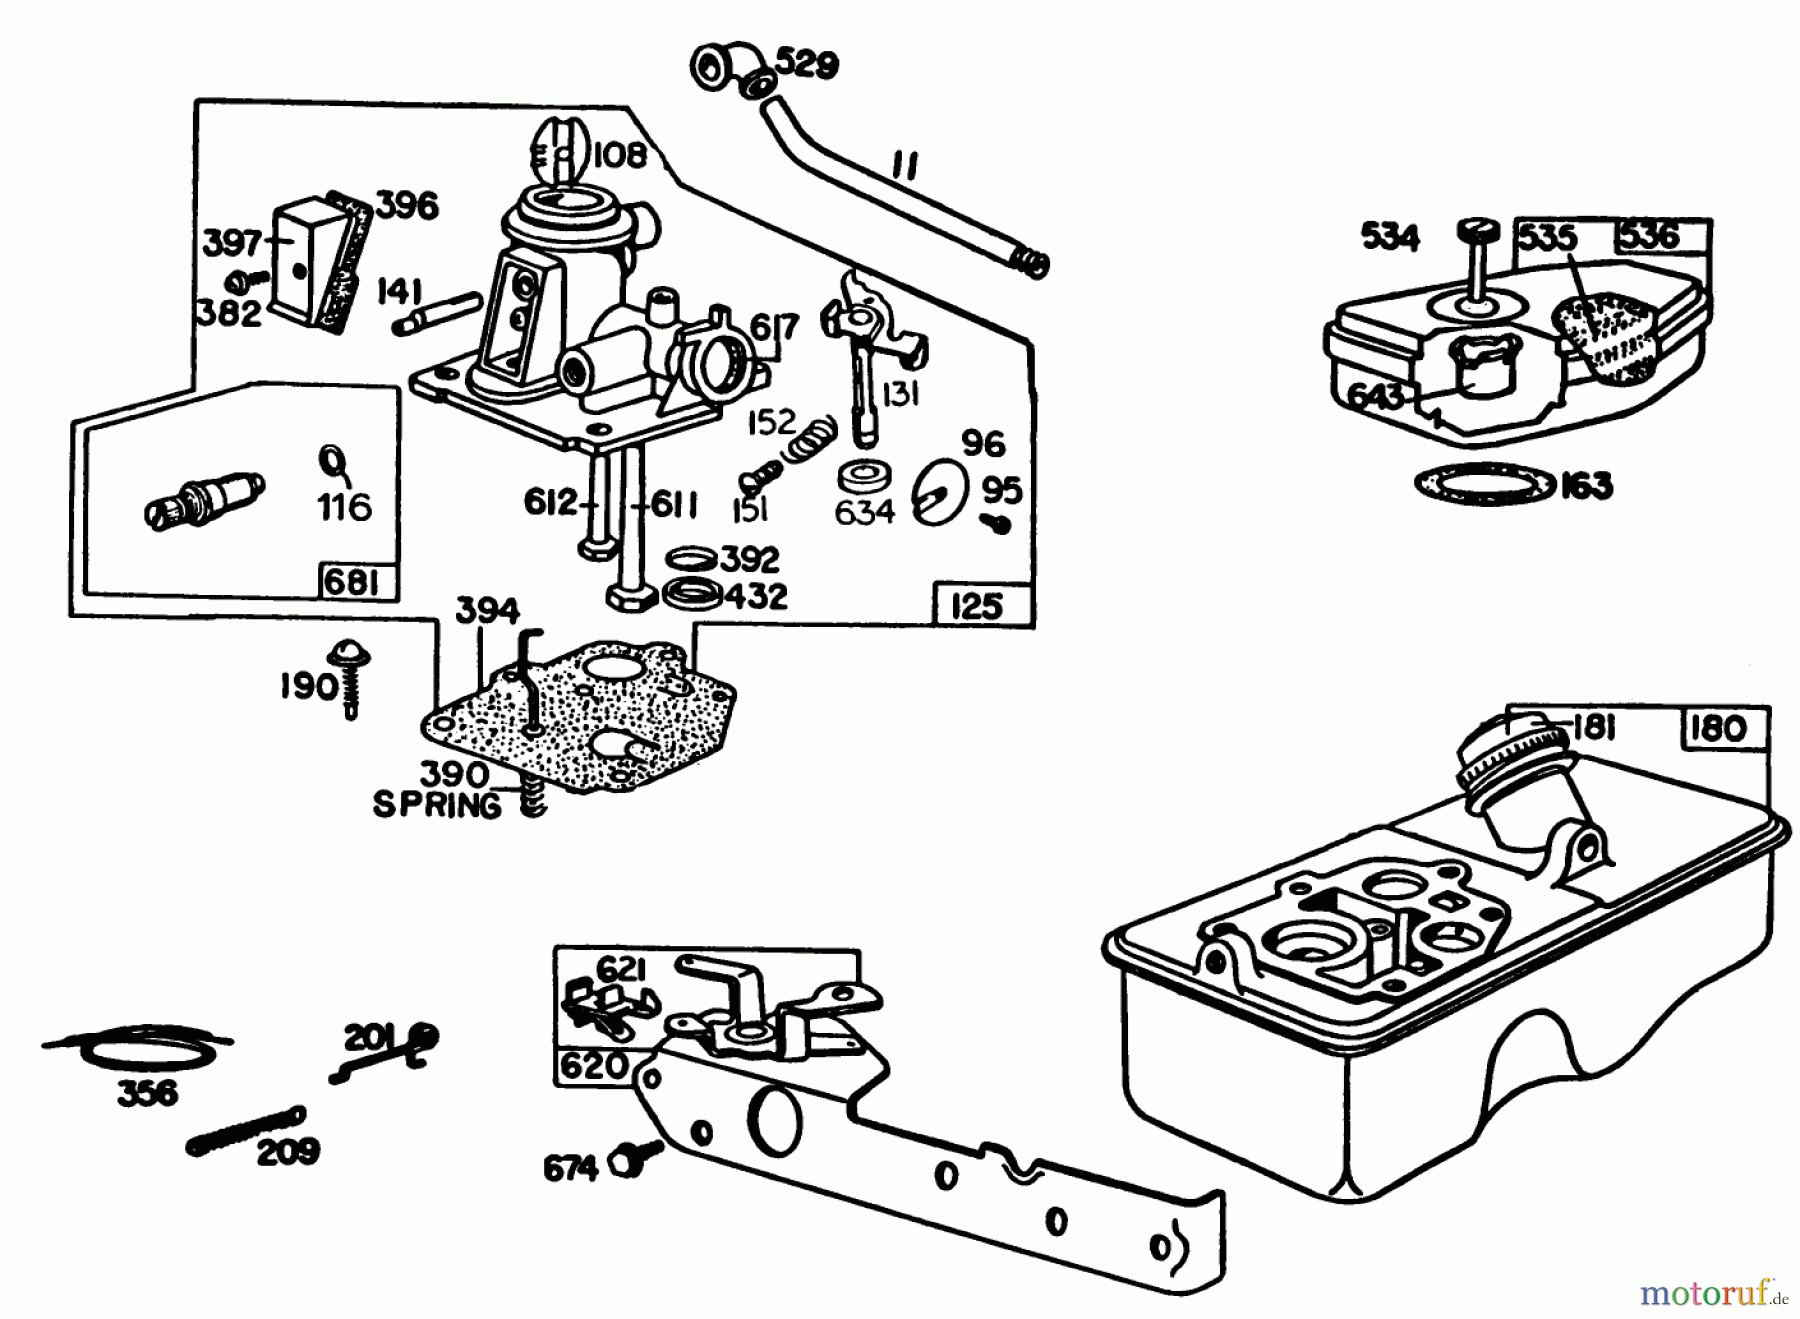  Toro Neu Mowers, Walk-Behind Seite 1 16330 - Toro Lawnmower, 1984 (4000001-4999999) ENGINE BRIGGS & STRATTON MODEL 92908-5205-01 #2